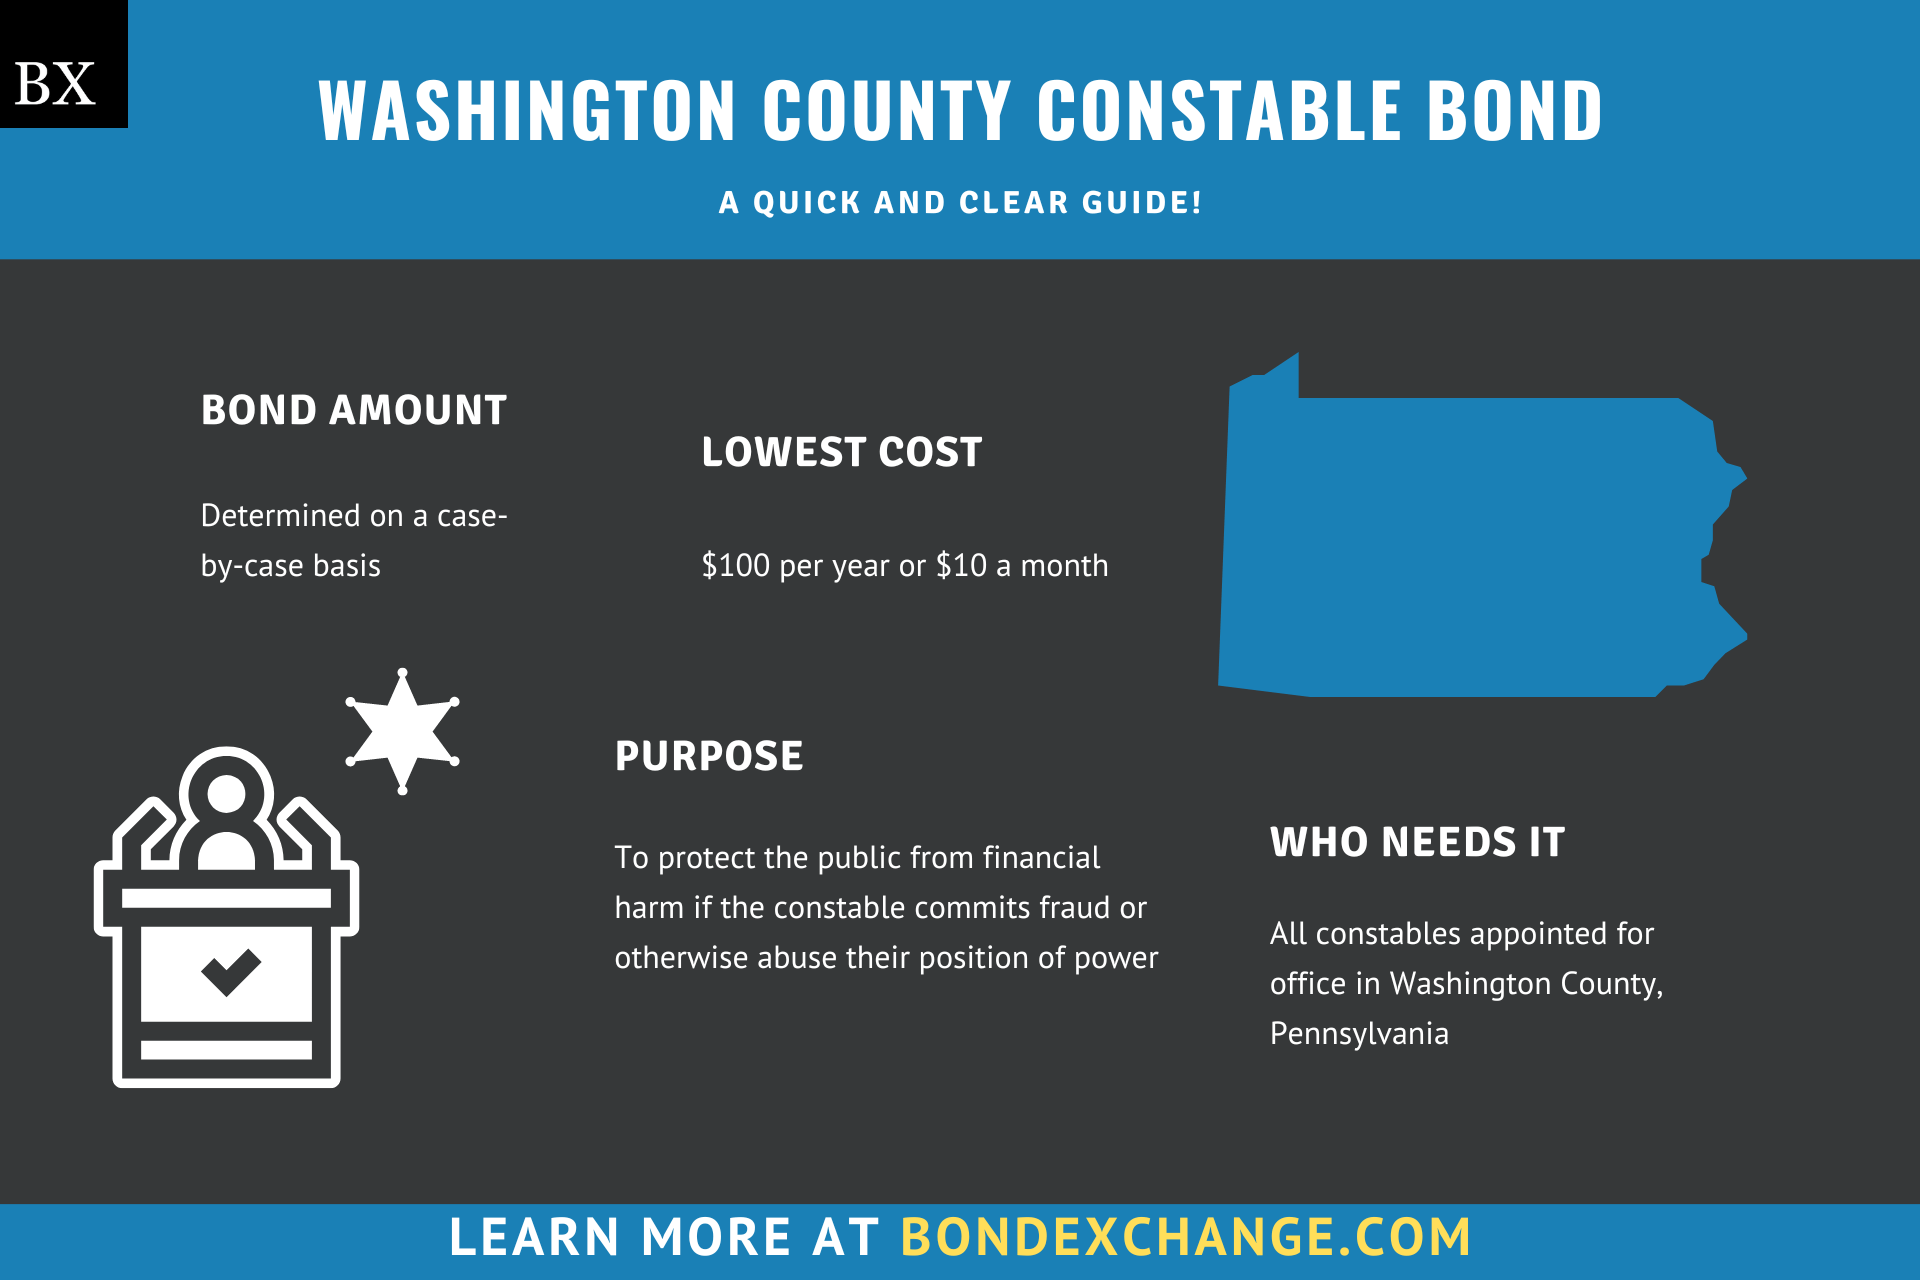 Washington County Constable Bond